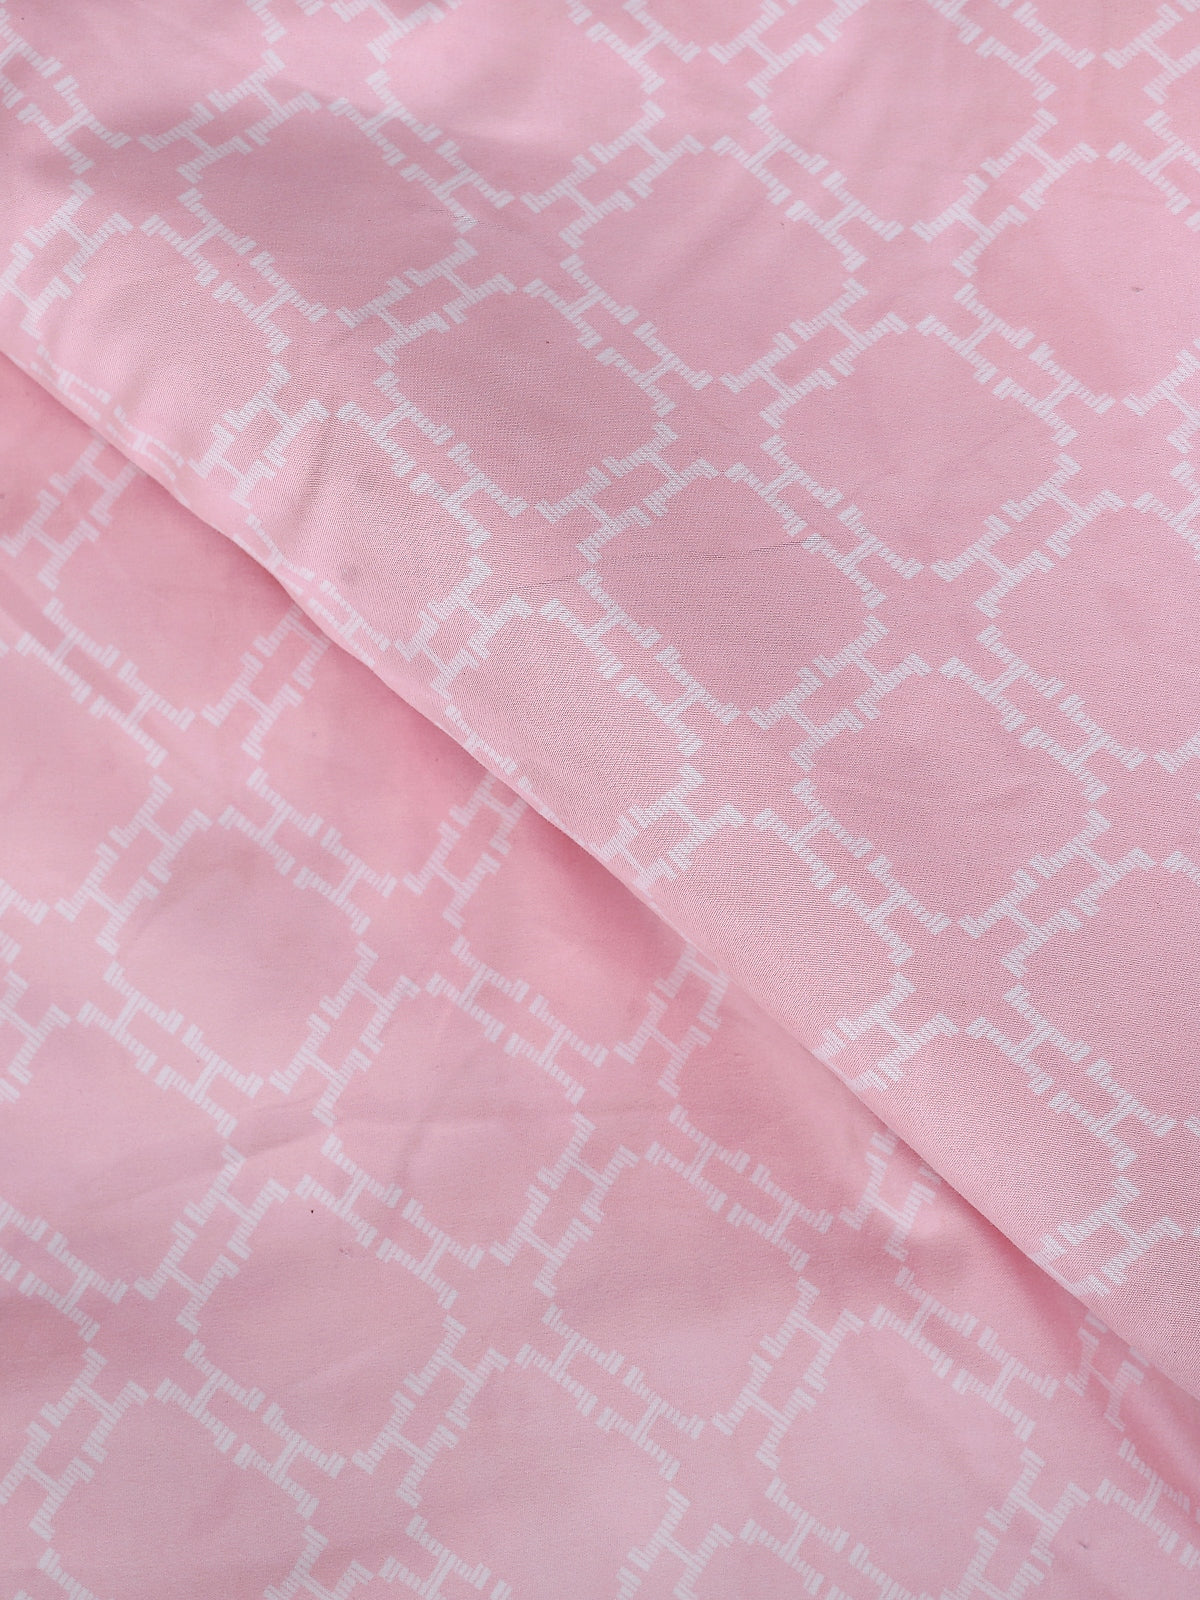 Pink & Blue Floral Patterned 200 GSM Reversible AC Comforter